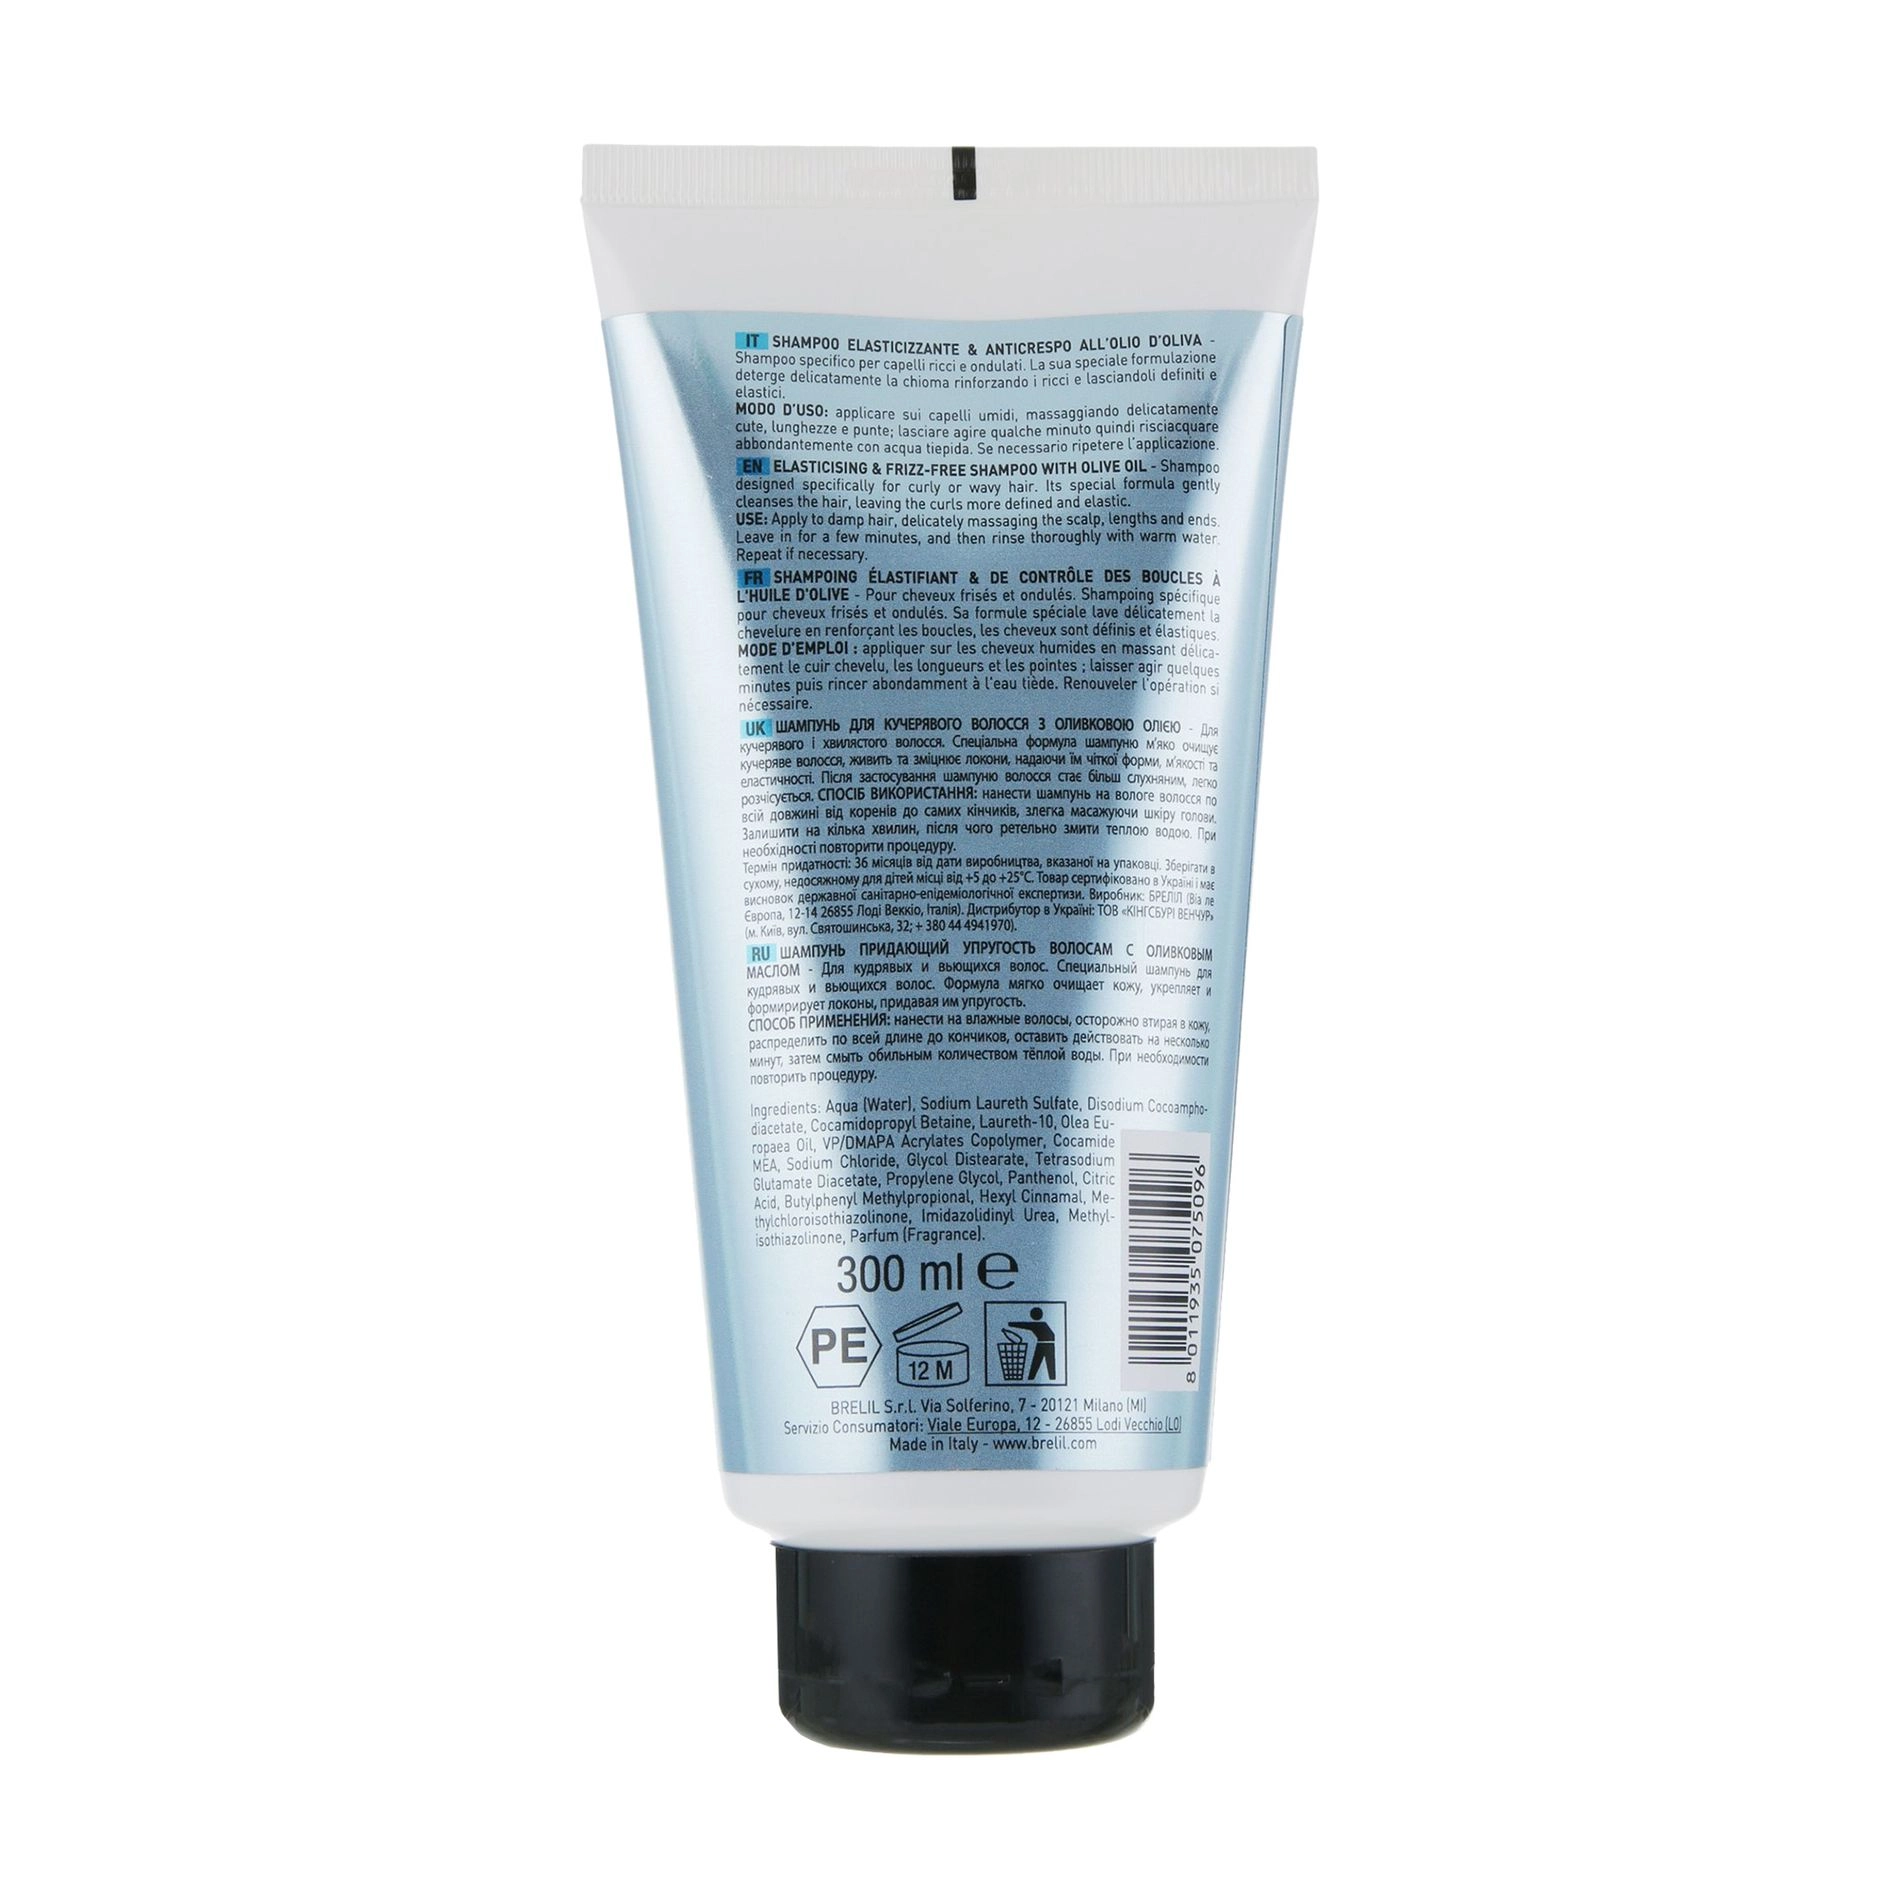 Brelil Шампунь Numero Elasticizing & Frizz-Free Shampoo с оливковым маслом, для вьющихся волос - фото N2